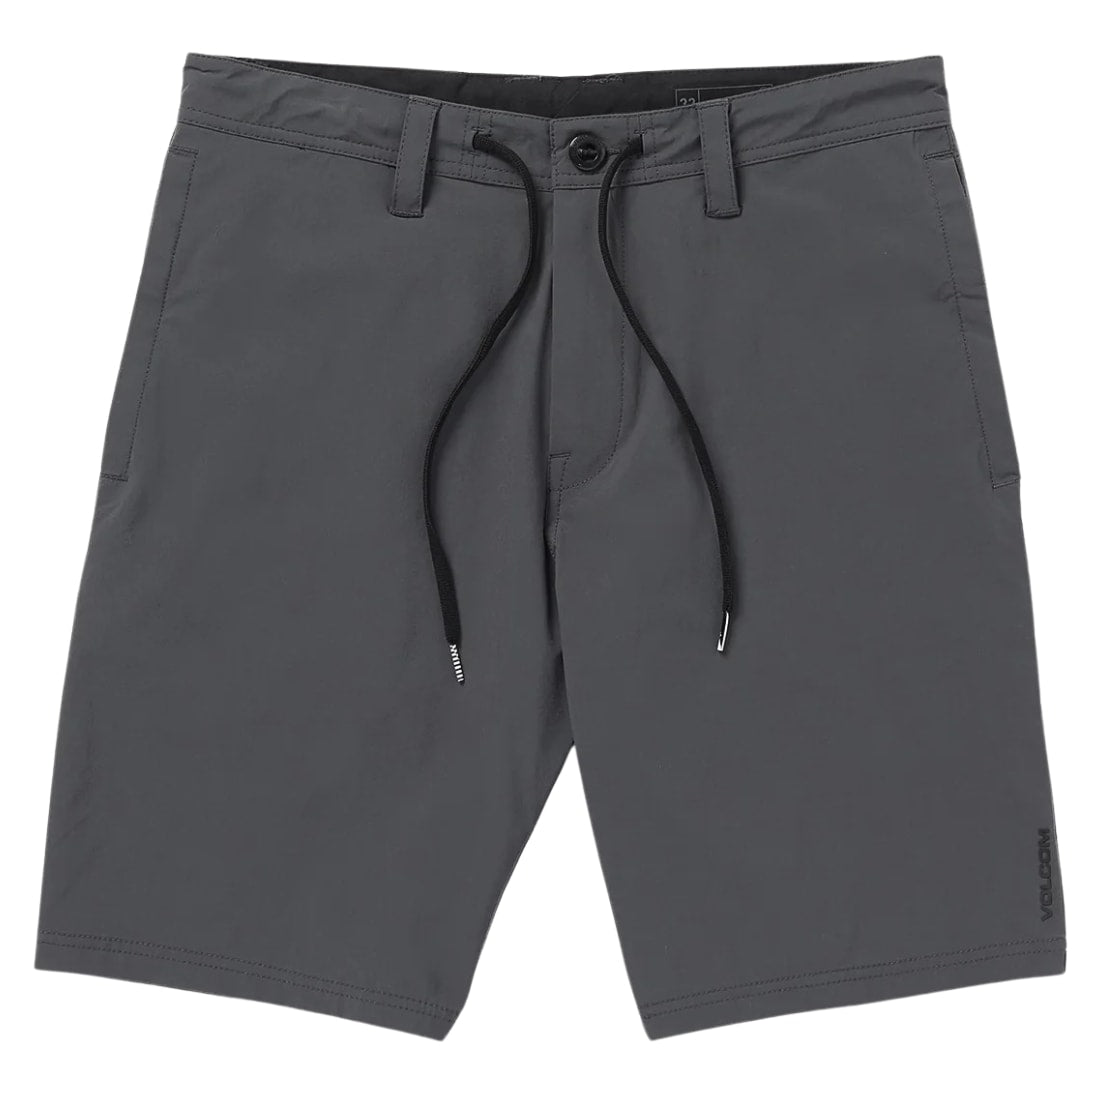 Volcom Voltripper 20" Hybrid Shorts - Asphalt Black - Mens Hybrid Shorts by Volcom